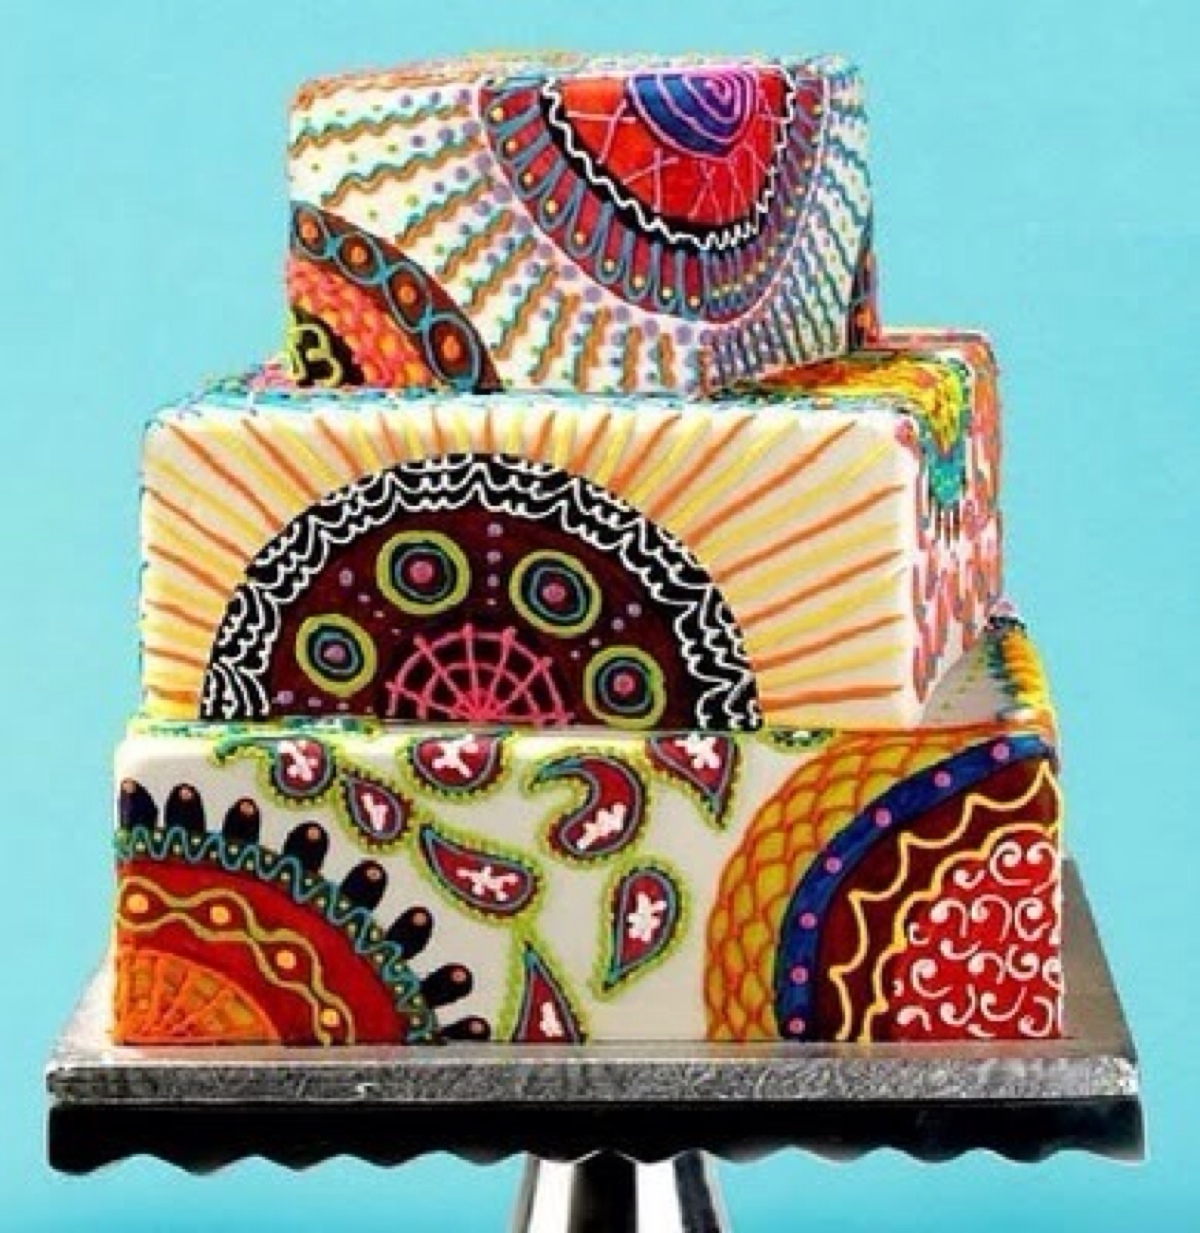 【彩绘婚礼蛋糕】甜品专家以蛋糕作为他们创作的素材,将他们的绘画